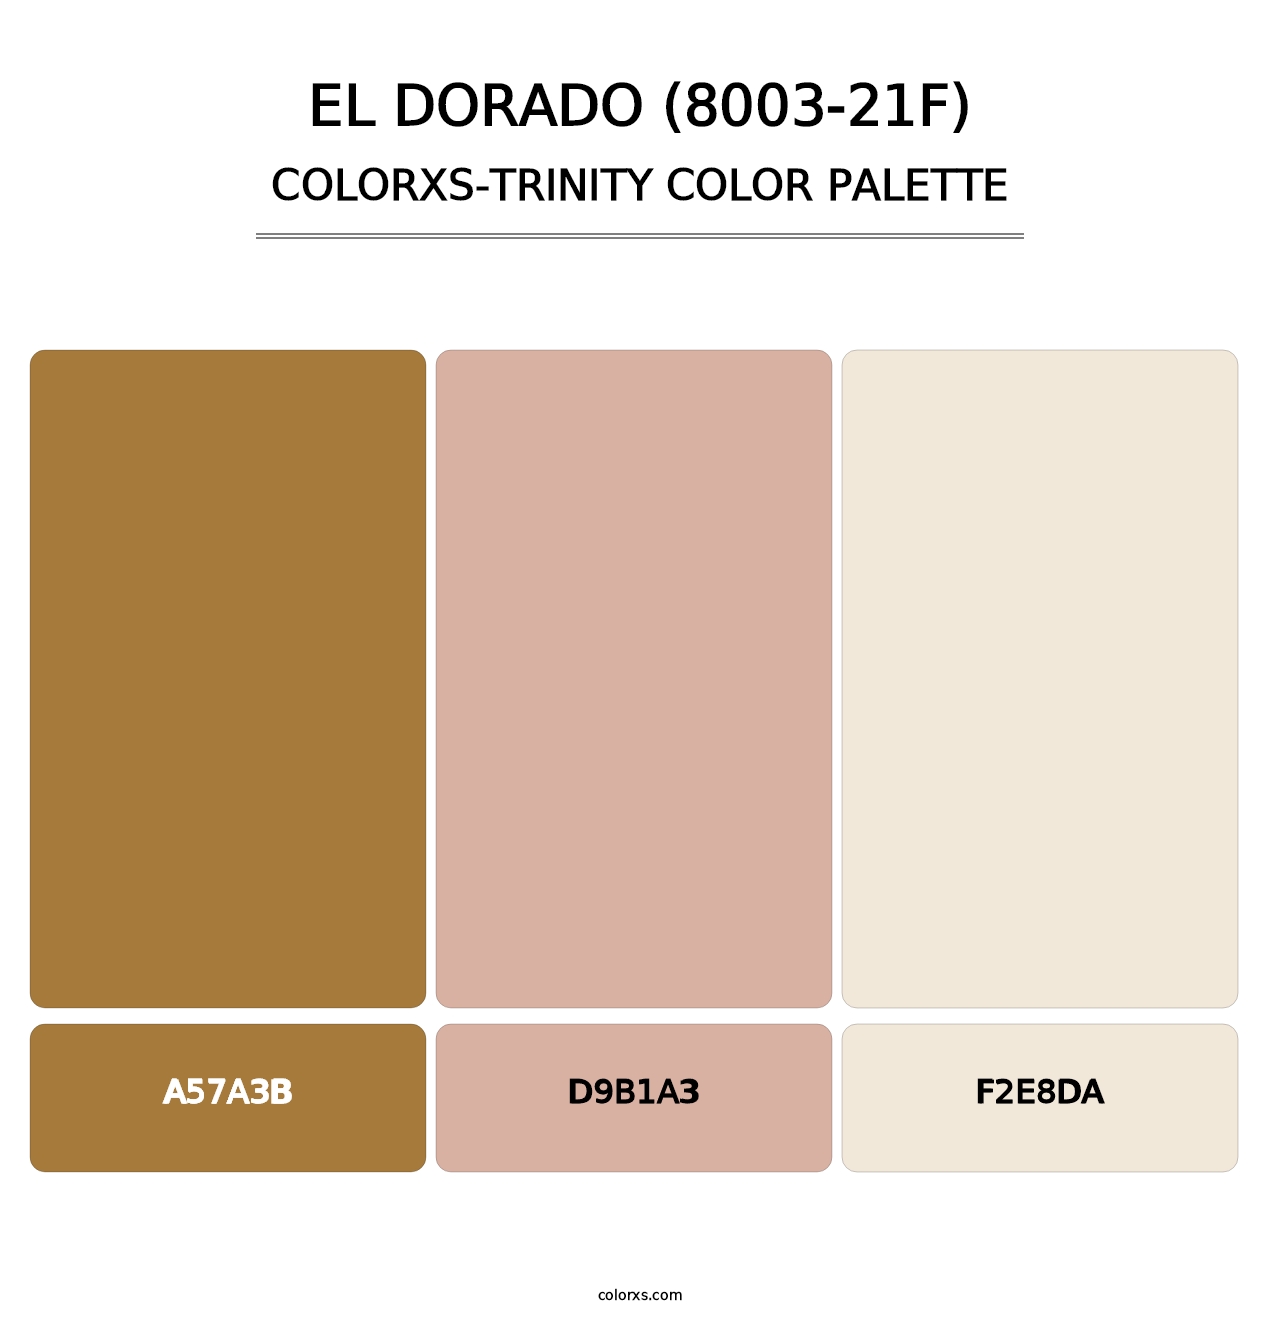 El Dorado (8003-21F) - Colorxs Trinity Palette